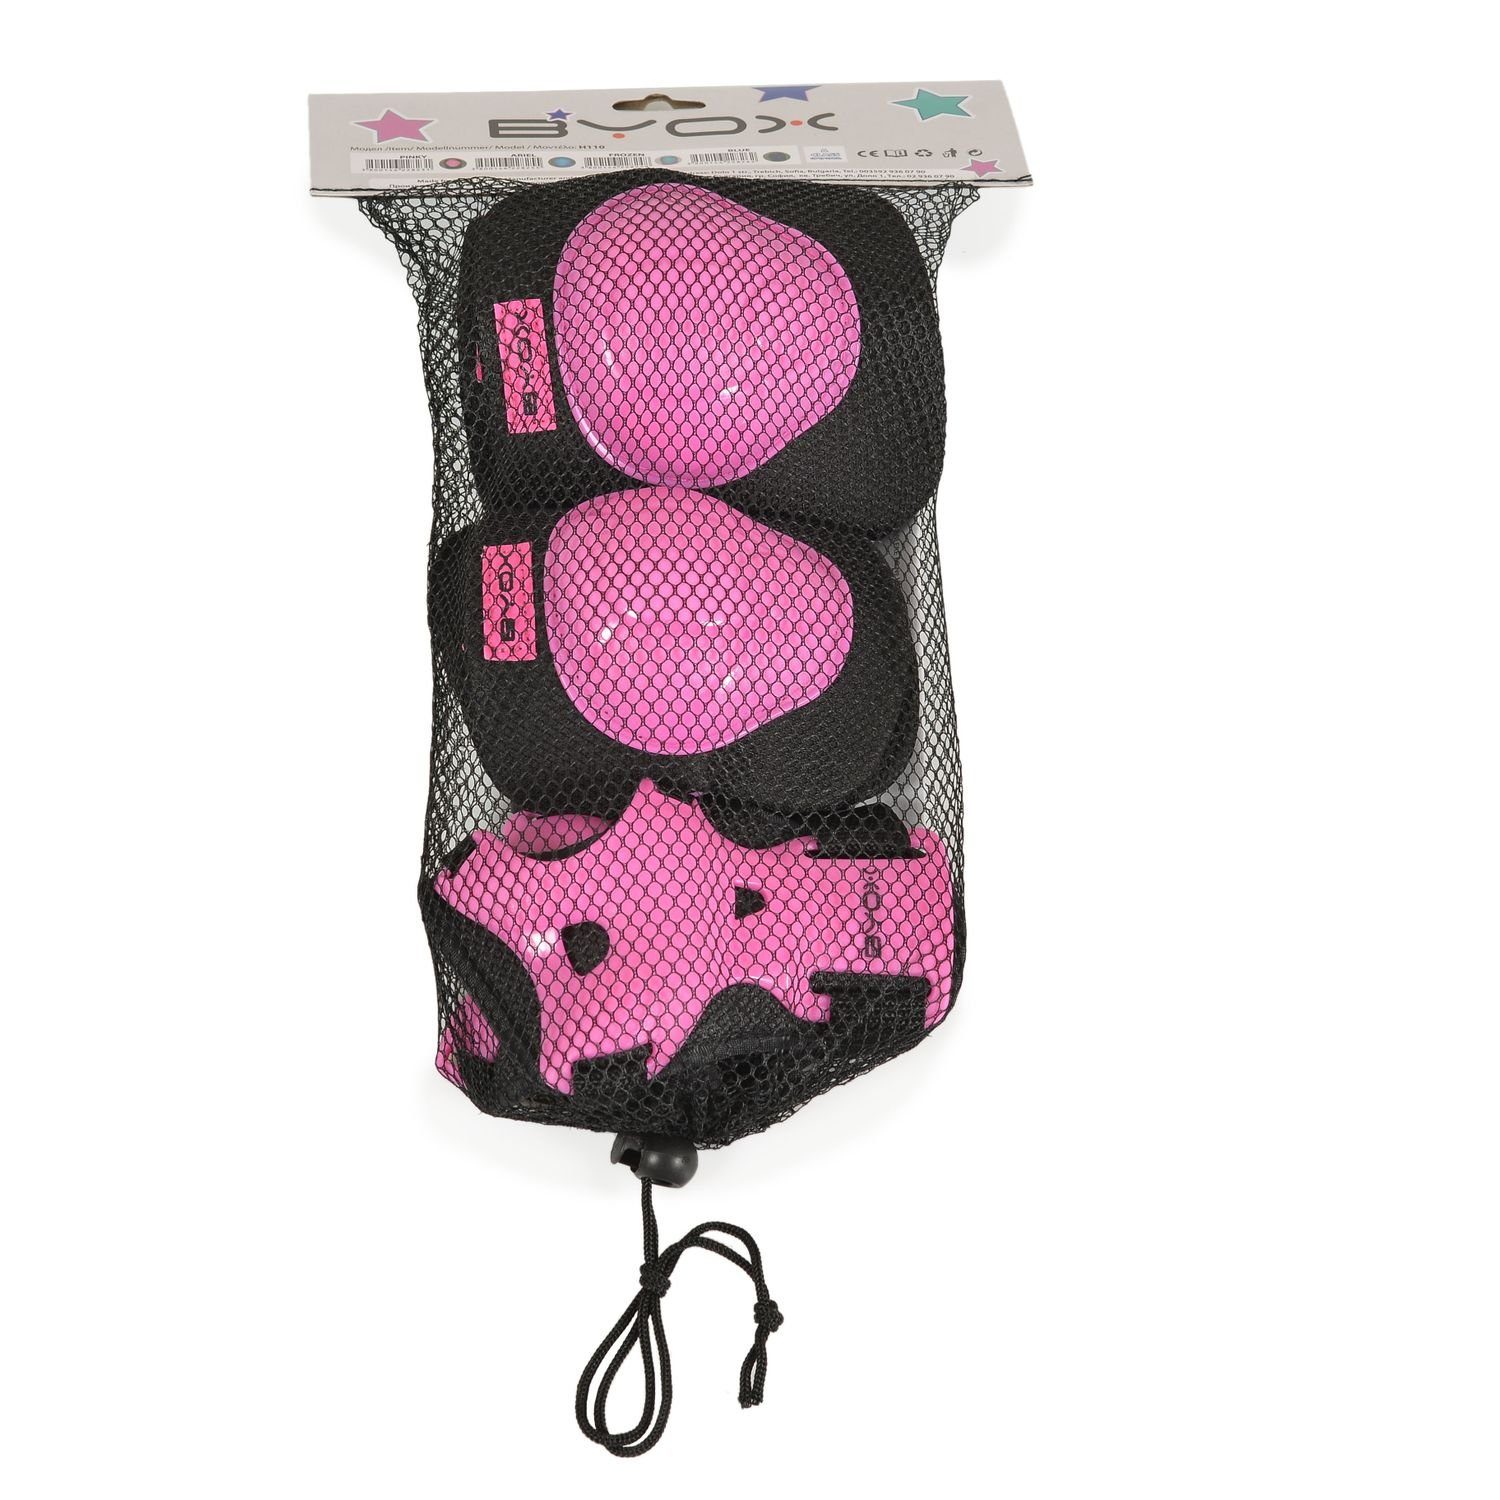 Protektoren und Protektoren-Set Knieschützer Byox H110, Schutzausrüstung Handgelenk- Ellenbogen- pink